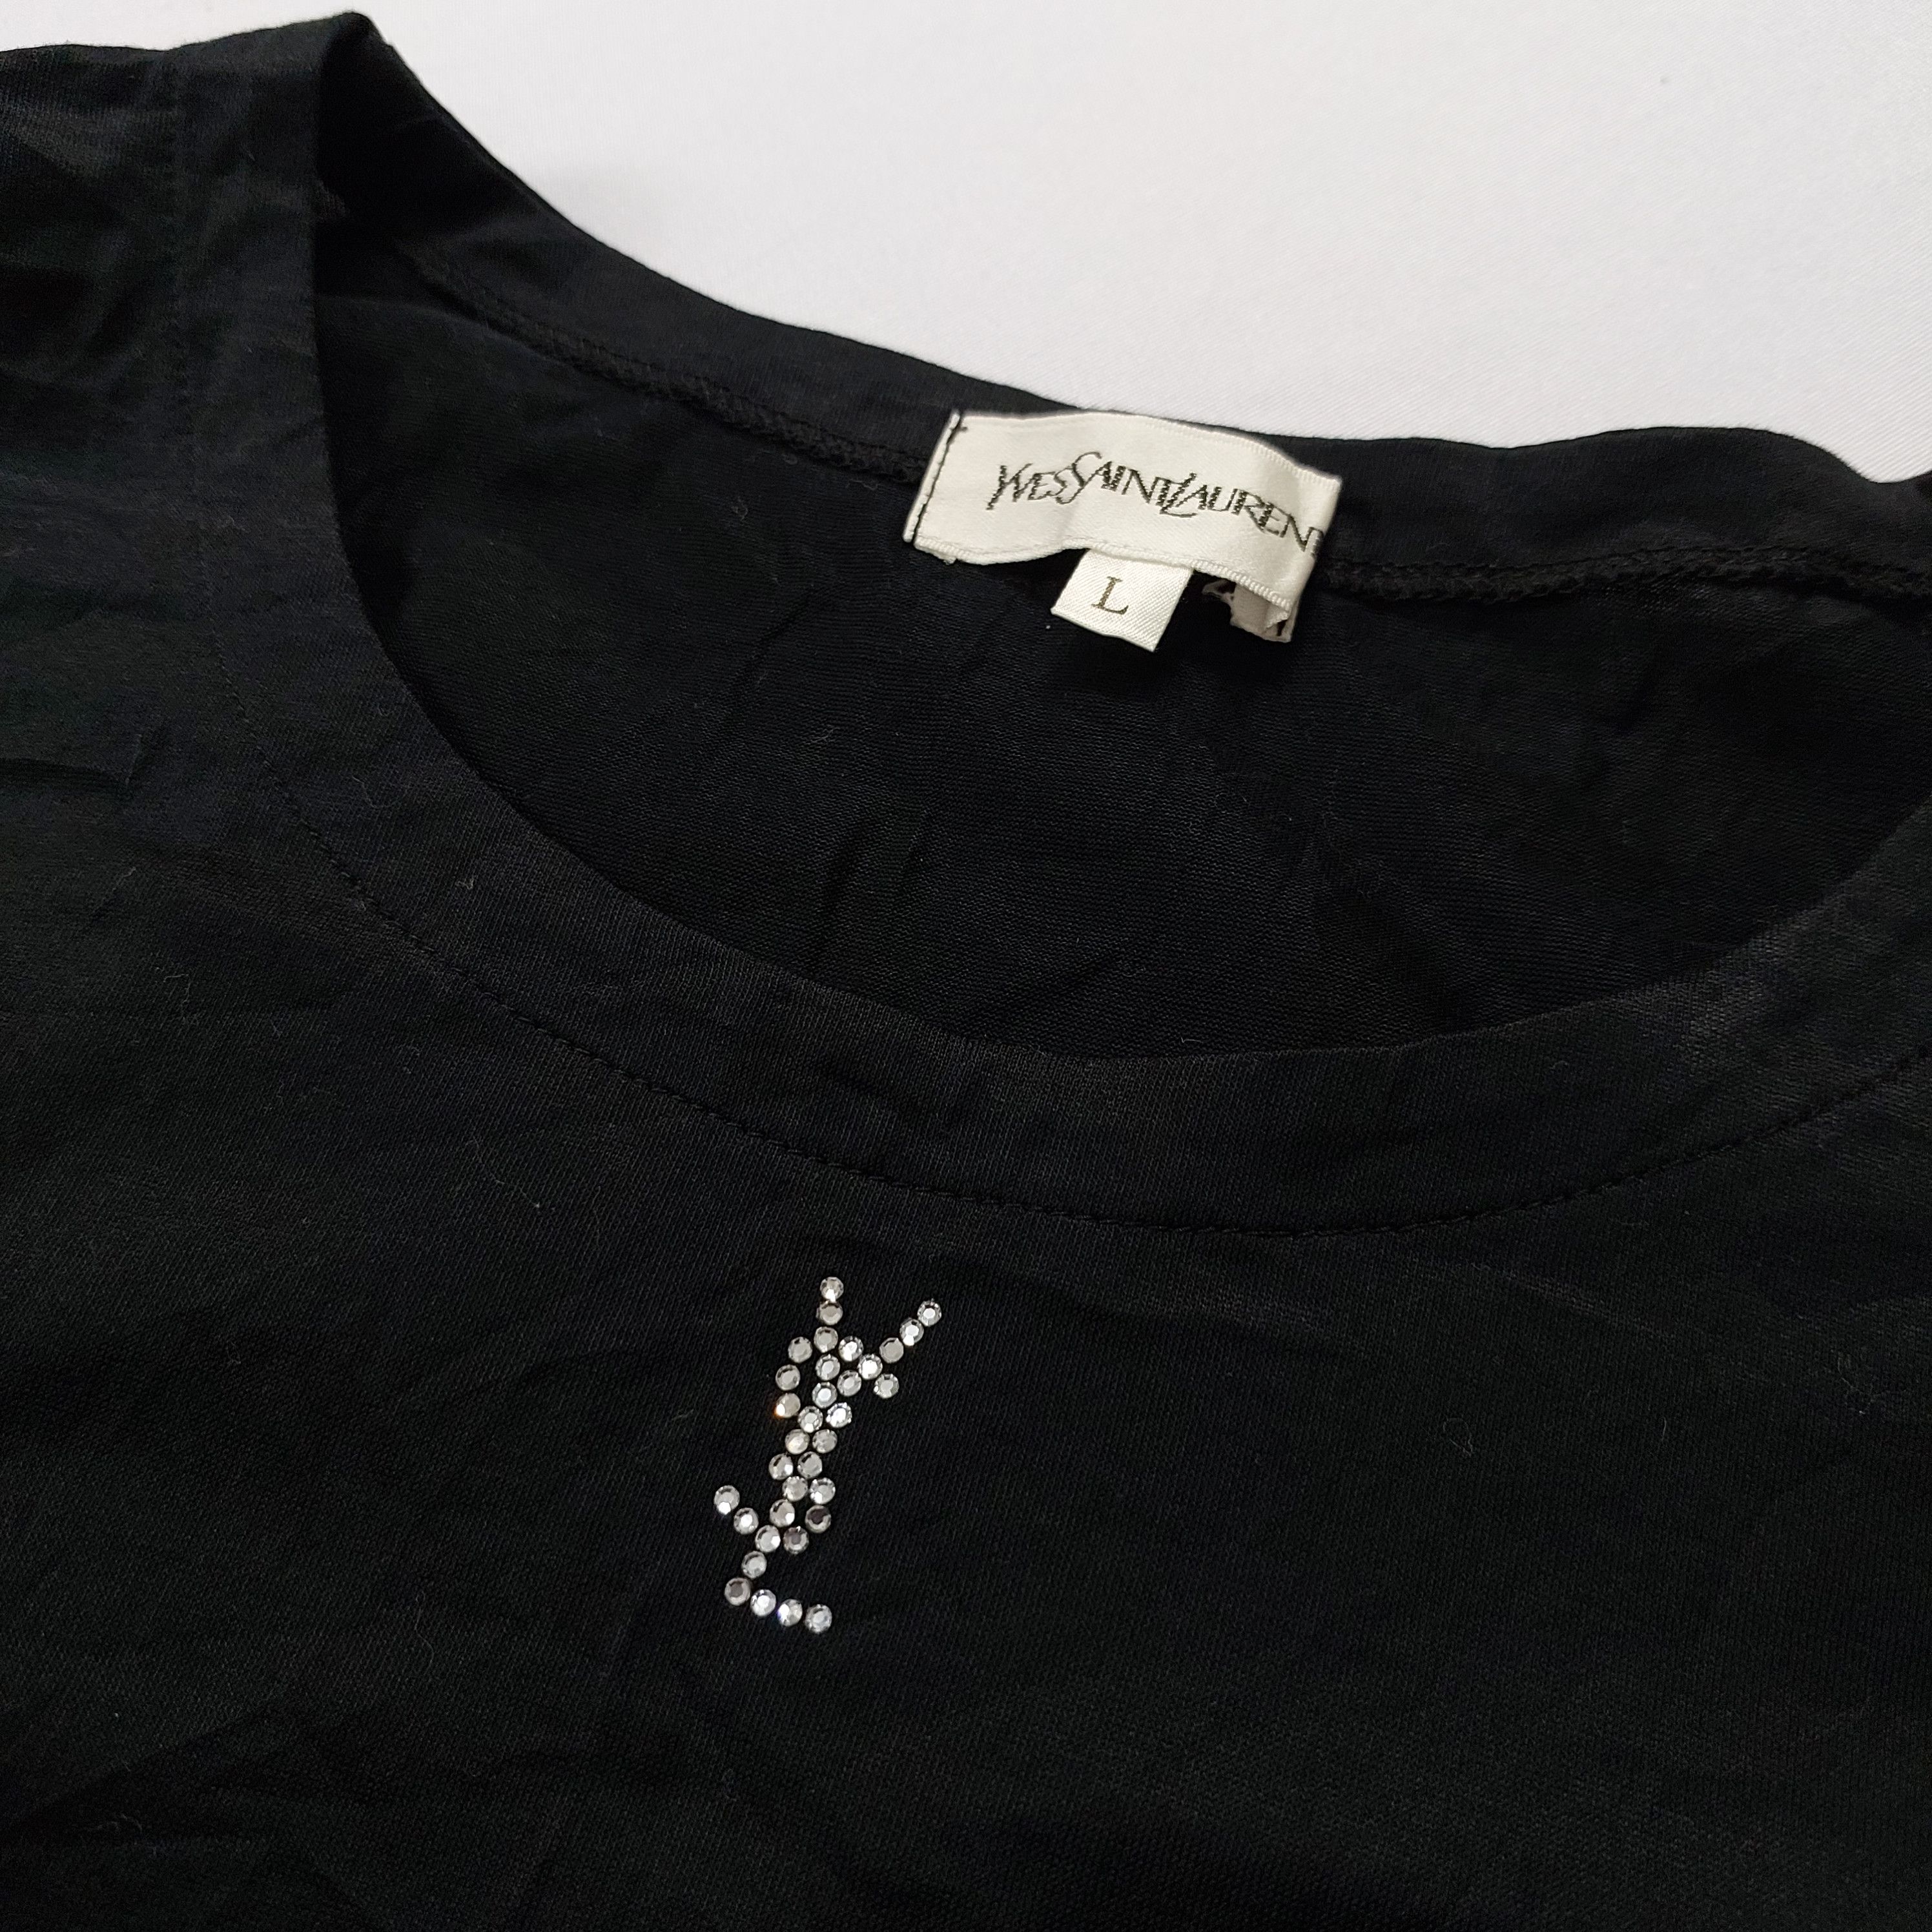 Yves Saint Laurent - Rhinestones Logo - Shirt - 3